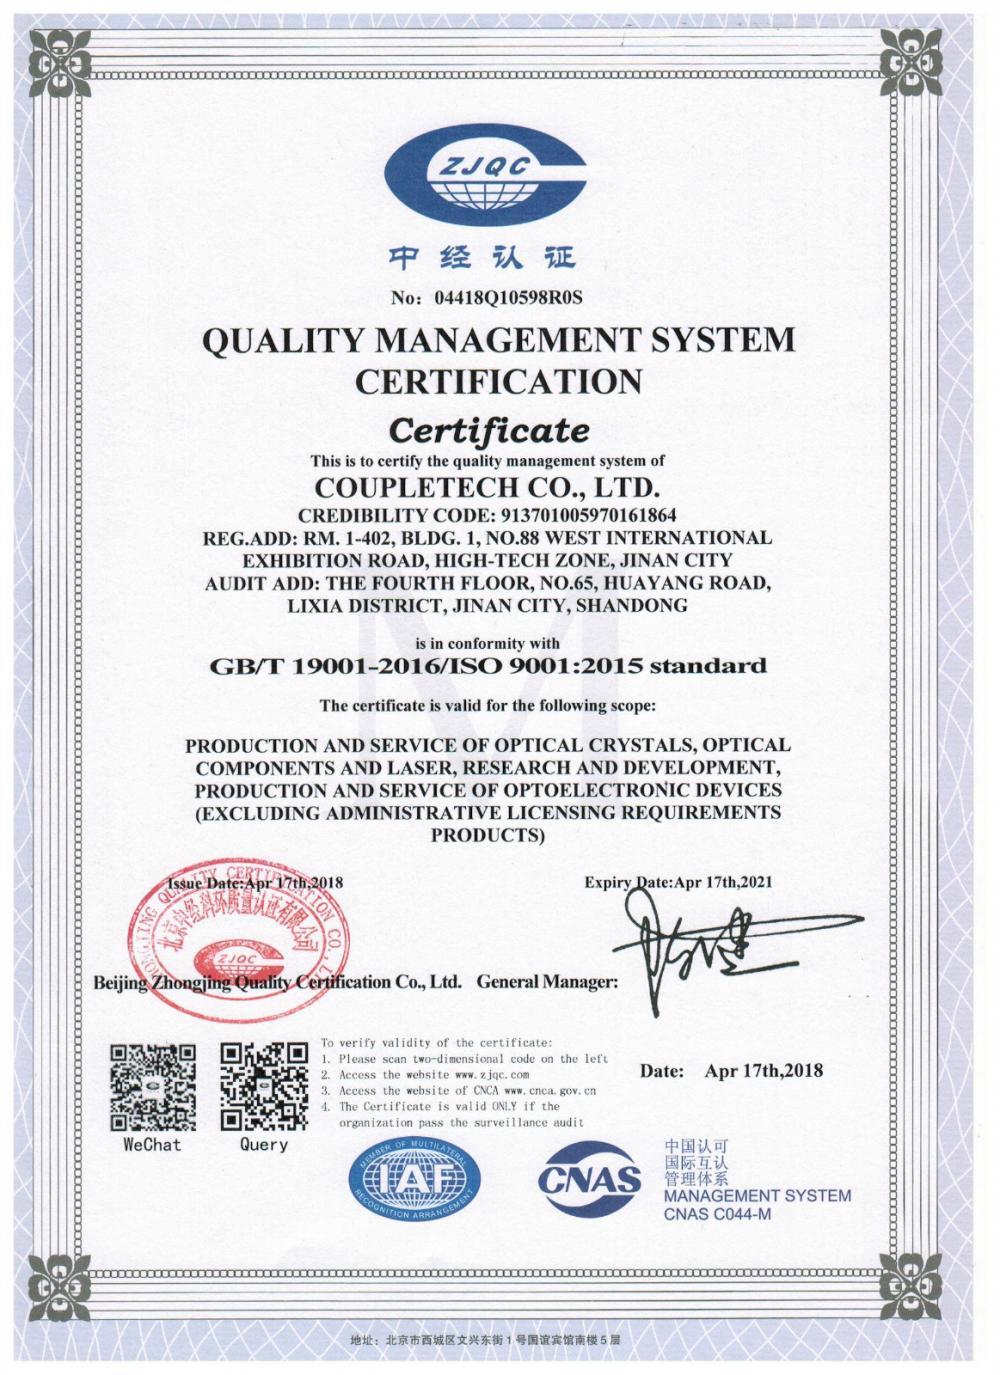 Coupletech Co., Ltd. премина сертифицирането: Модулна скоба за кристали за активен контрол на температурата.